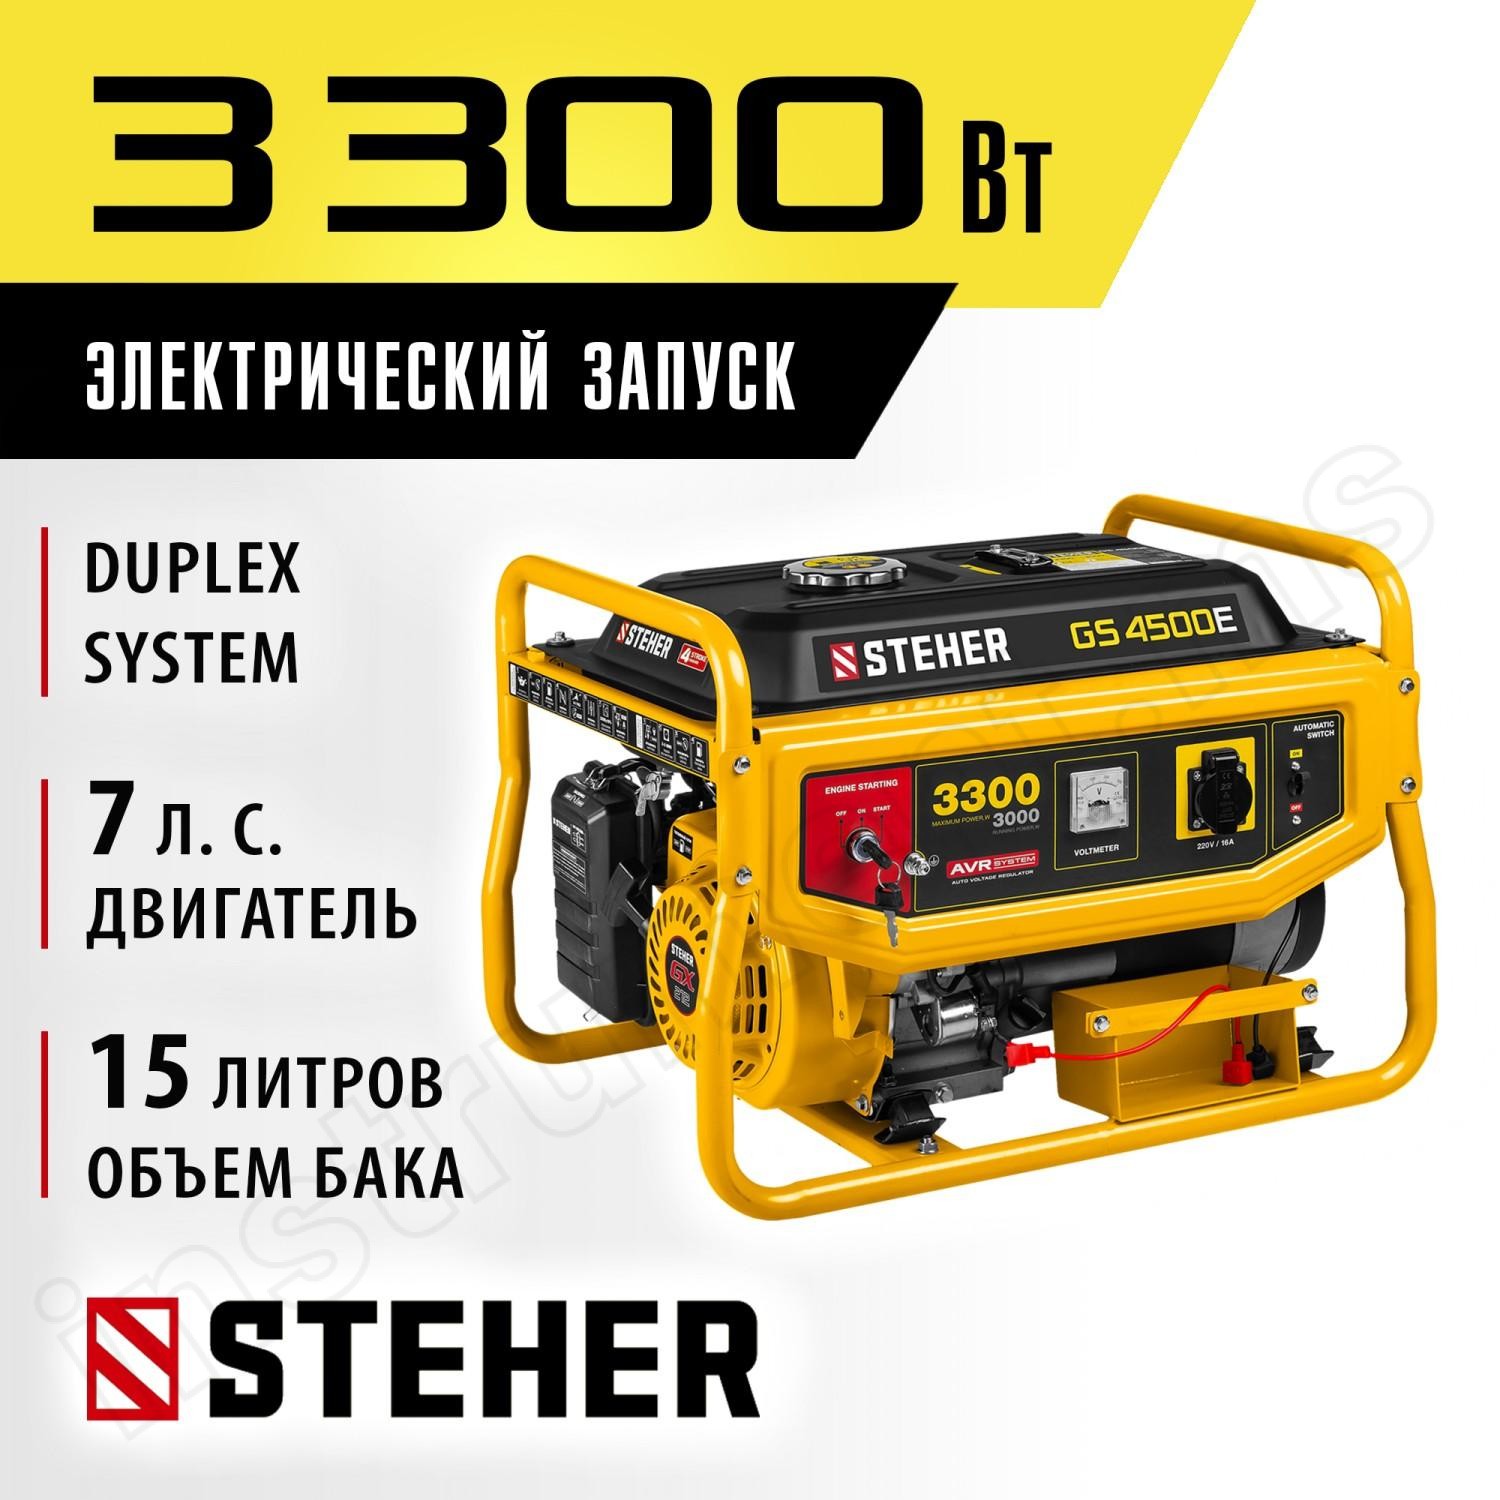 STEHER  3300 Вт, бензиновый генератор с электростартером (GS-4500E) - фото 2